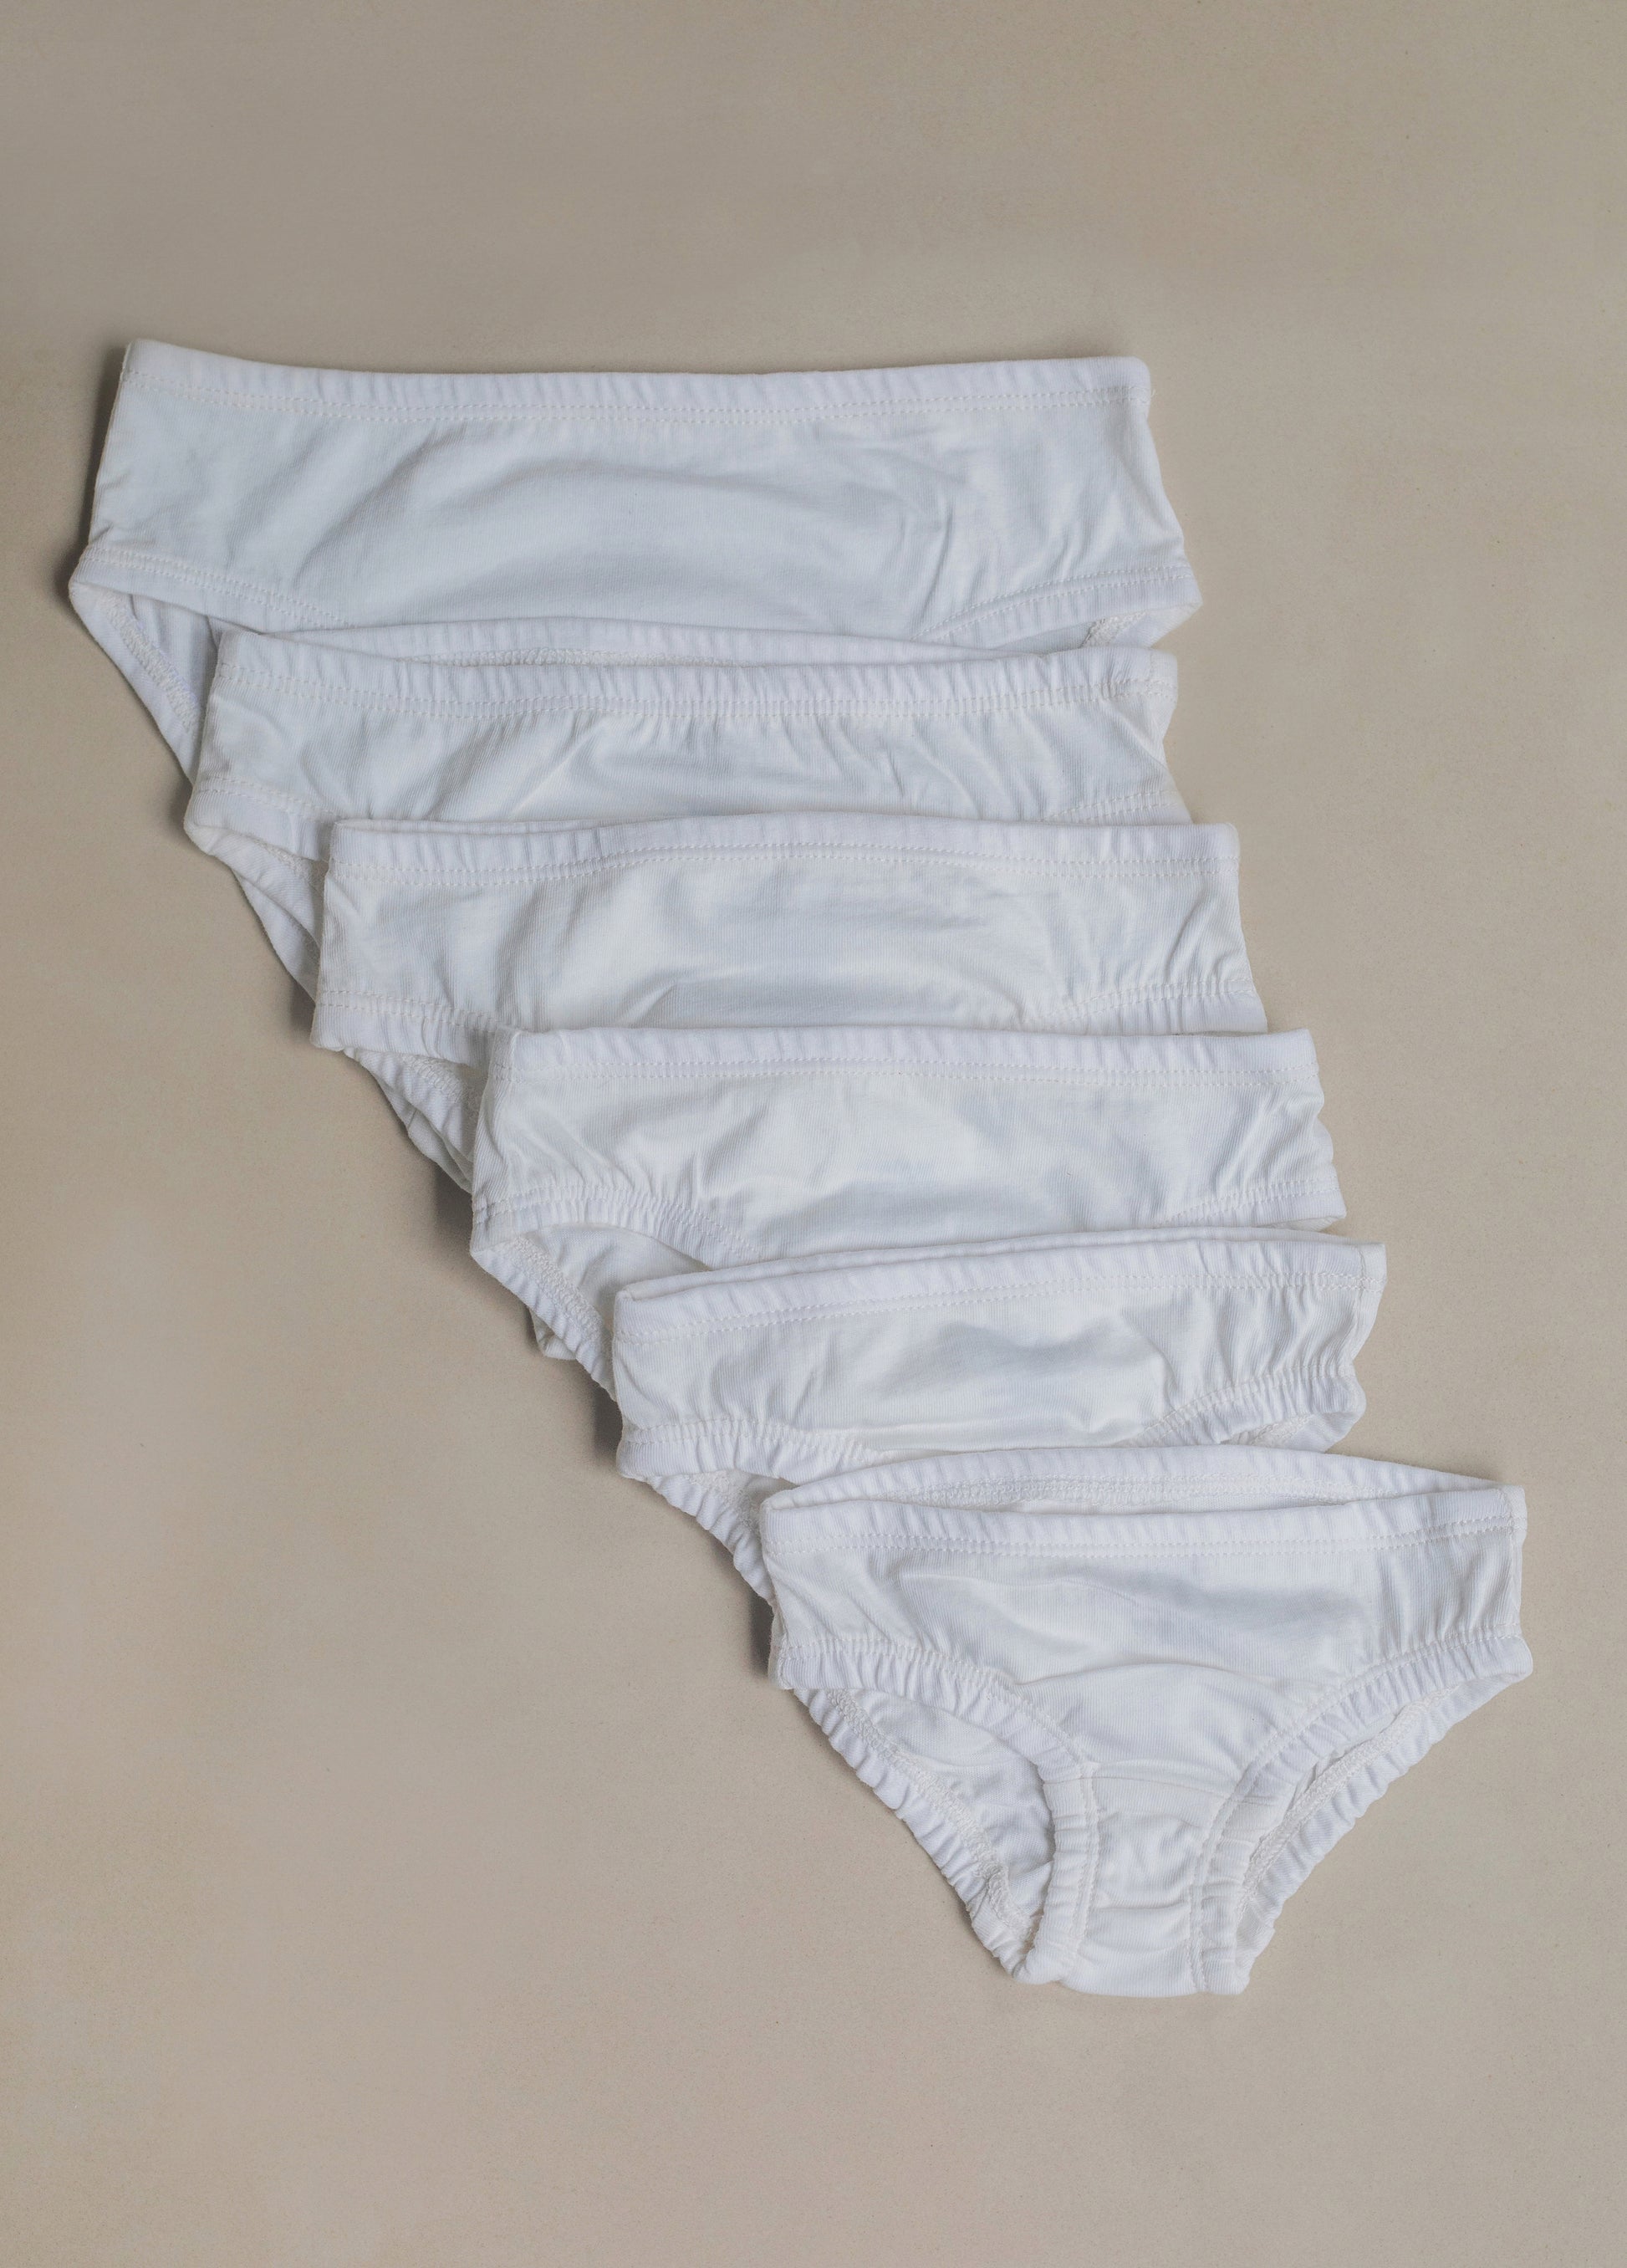 Girl's Organic Cotton Hipster Underwear, Kids Undergarment